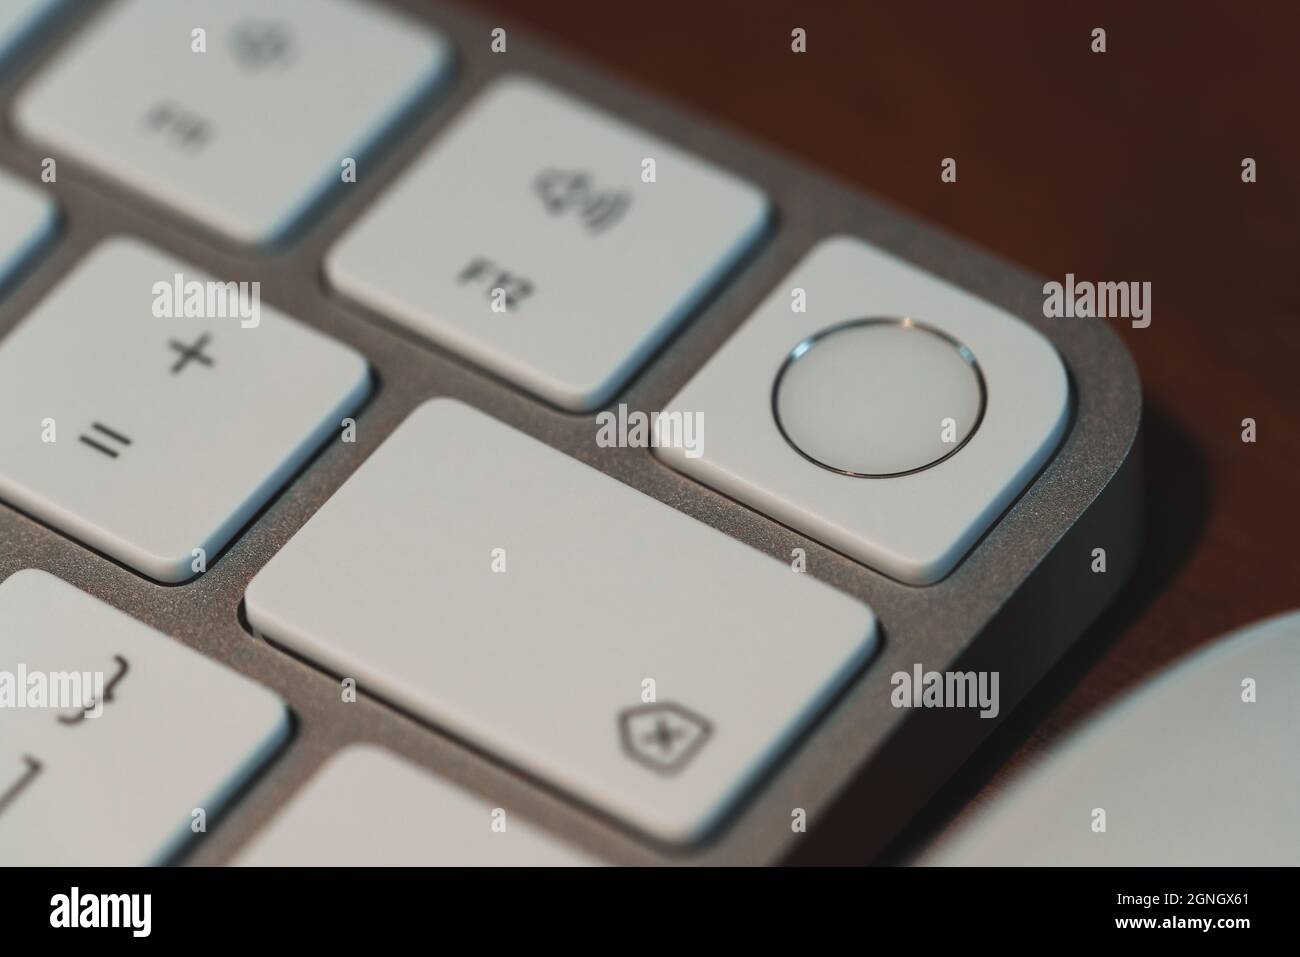 Londres, Royaume-Uni - 25 mai 2021 : gros plan de l'élément Touch ID sur le nouveau clavier Apple Magic introduit en 2021 en même temps que le nouvel iMac. Banque D'Images